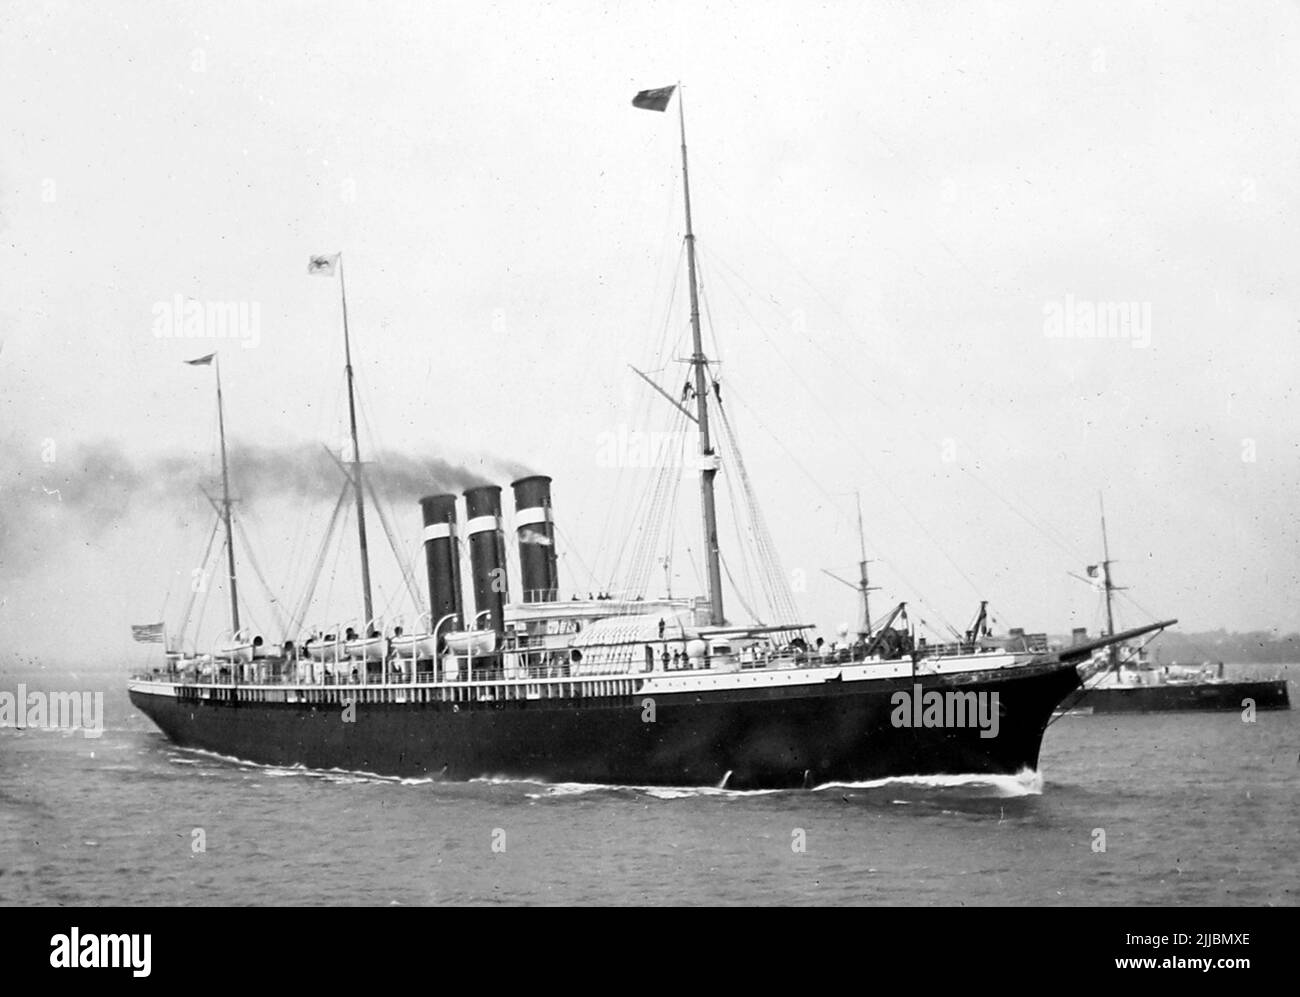 SS (Ciudad de) barco de vapor de París, época victoriana Foto de stock